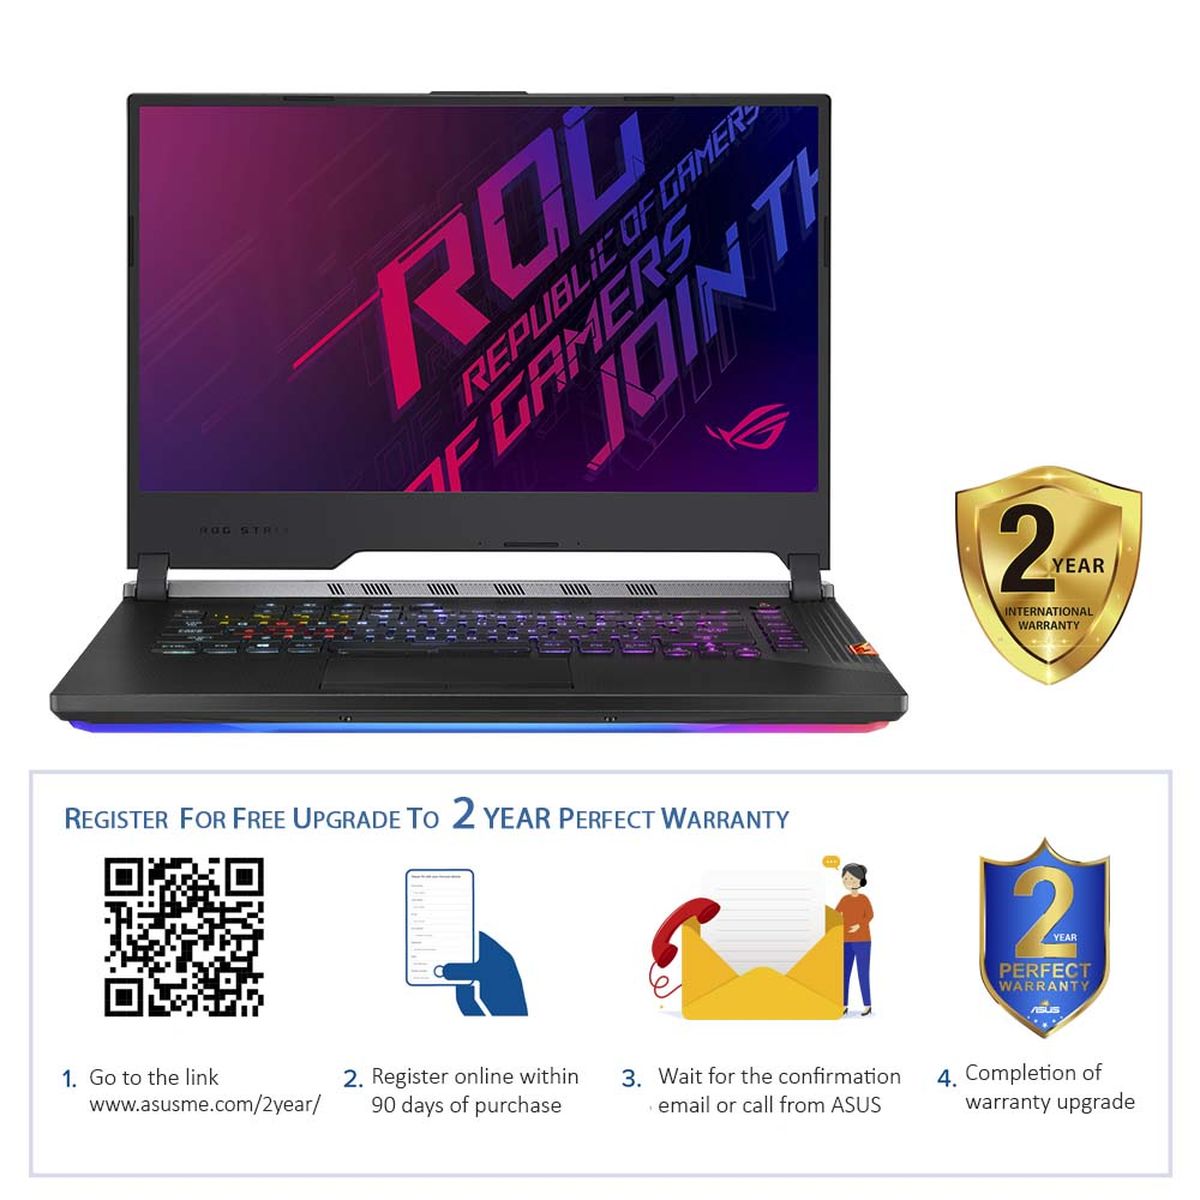 ASUS ROG Strix Scar III G731GV-EV073T Gaming Laptop i7-9750H/16GB/1TB HDD+256GB SSD/NVIDIA GeForce RTX 2060 6GB/17.3 inch FHD/144Hz/Windows 10